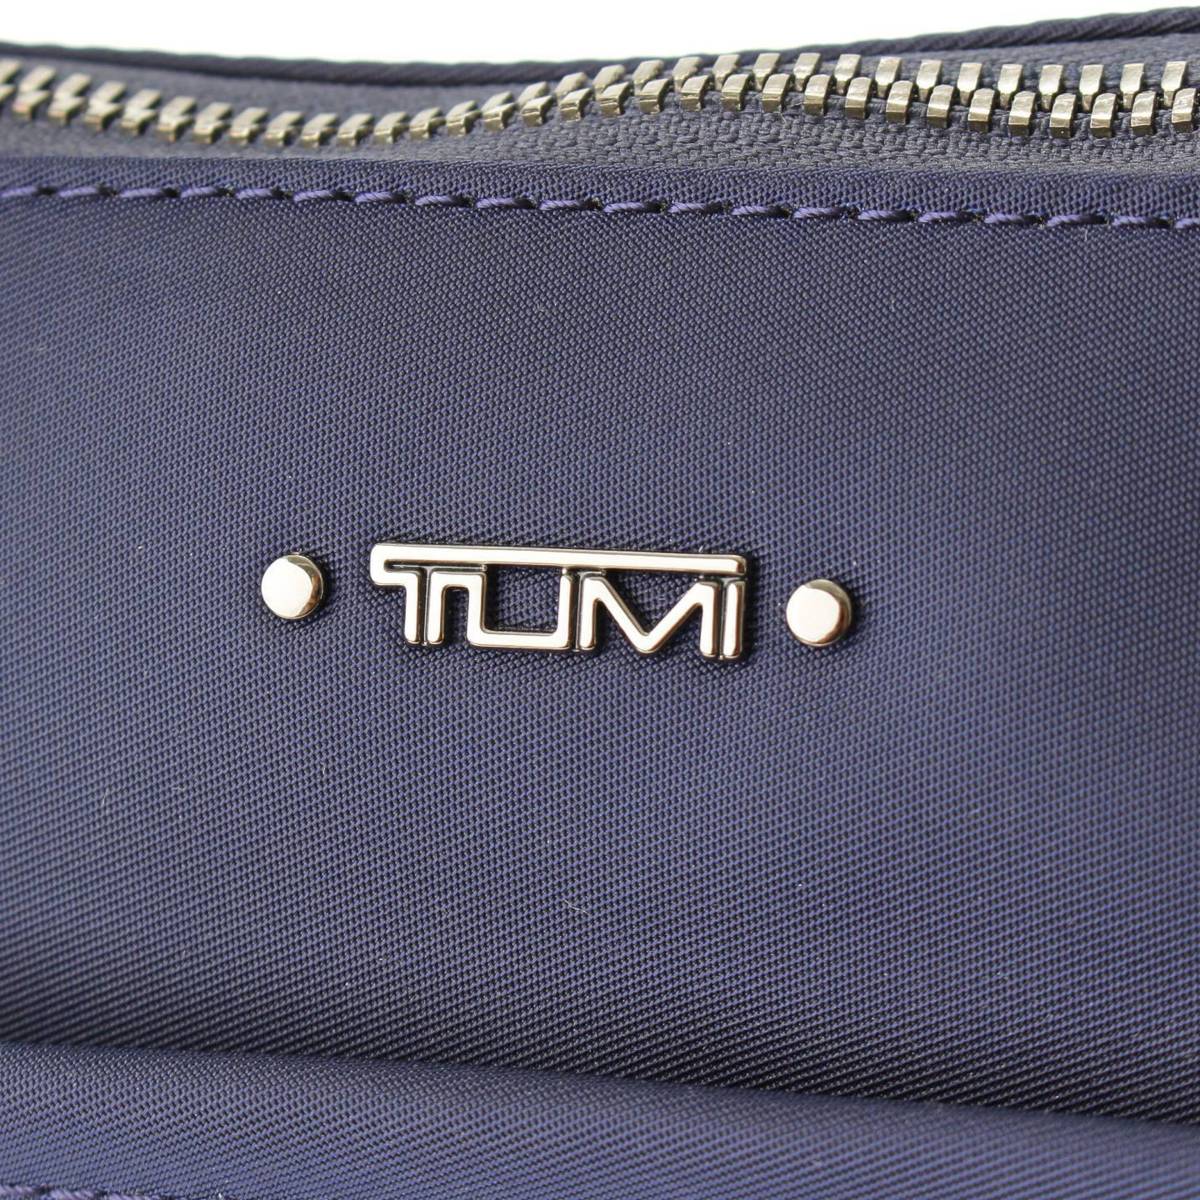 専門店では TUMI 「ジョアン」ラップトップ・キャリア Voyageur ビジネスバッグ